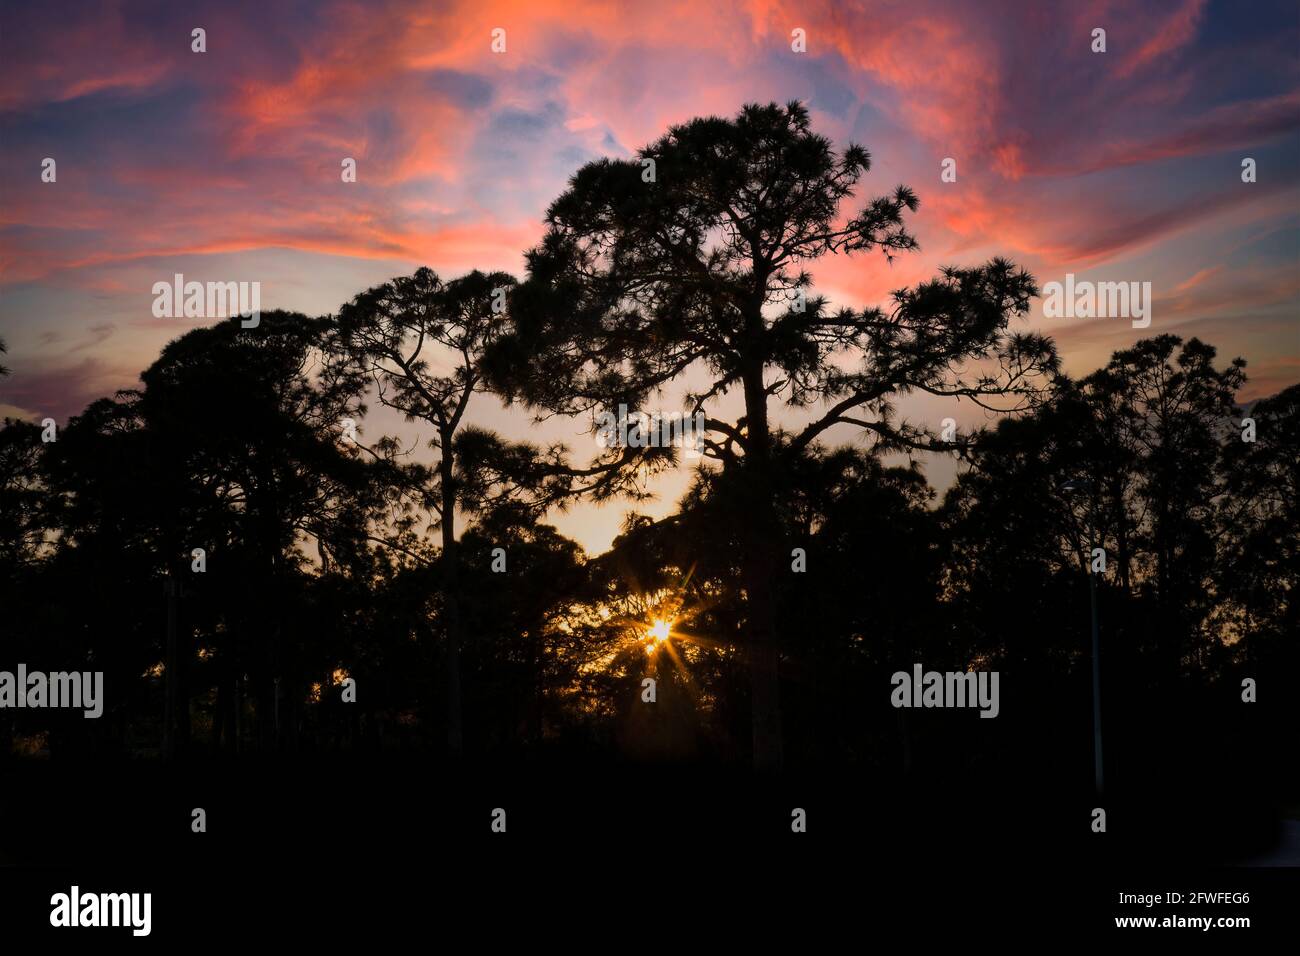 Bäume silogeted Aganist ein farbenfroher Sonnenuntergang Himmel im Südwesten Floridas USA Stockfoto